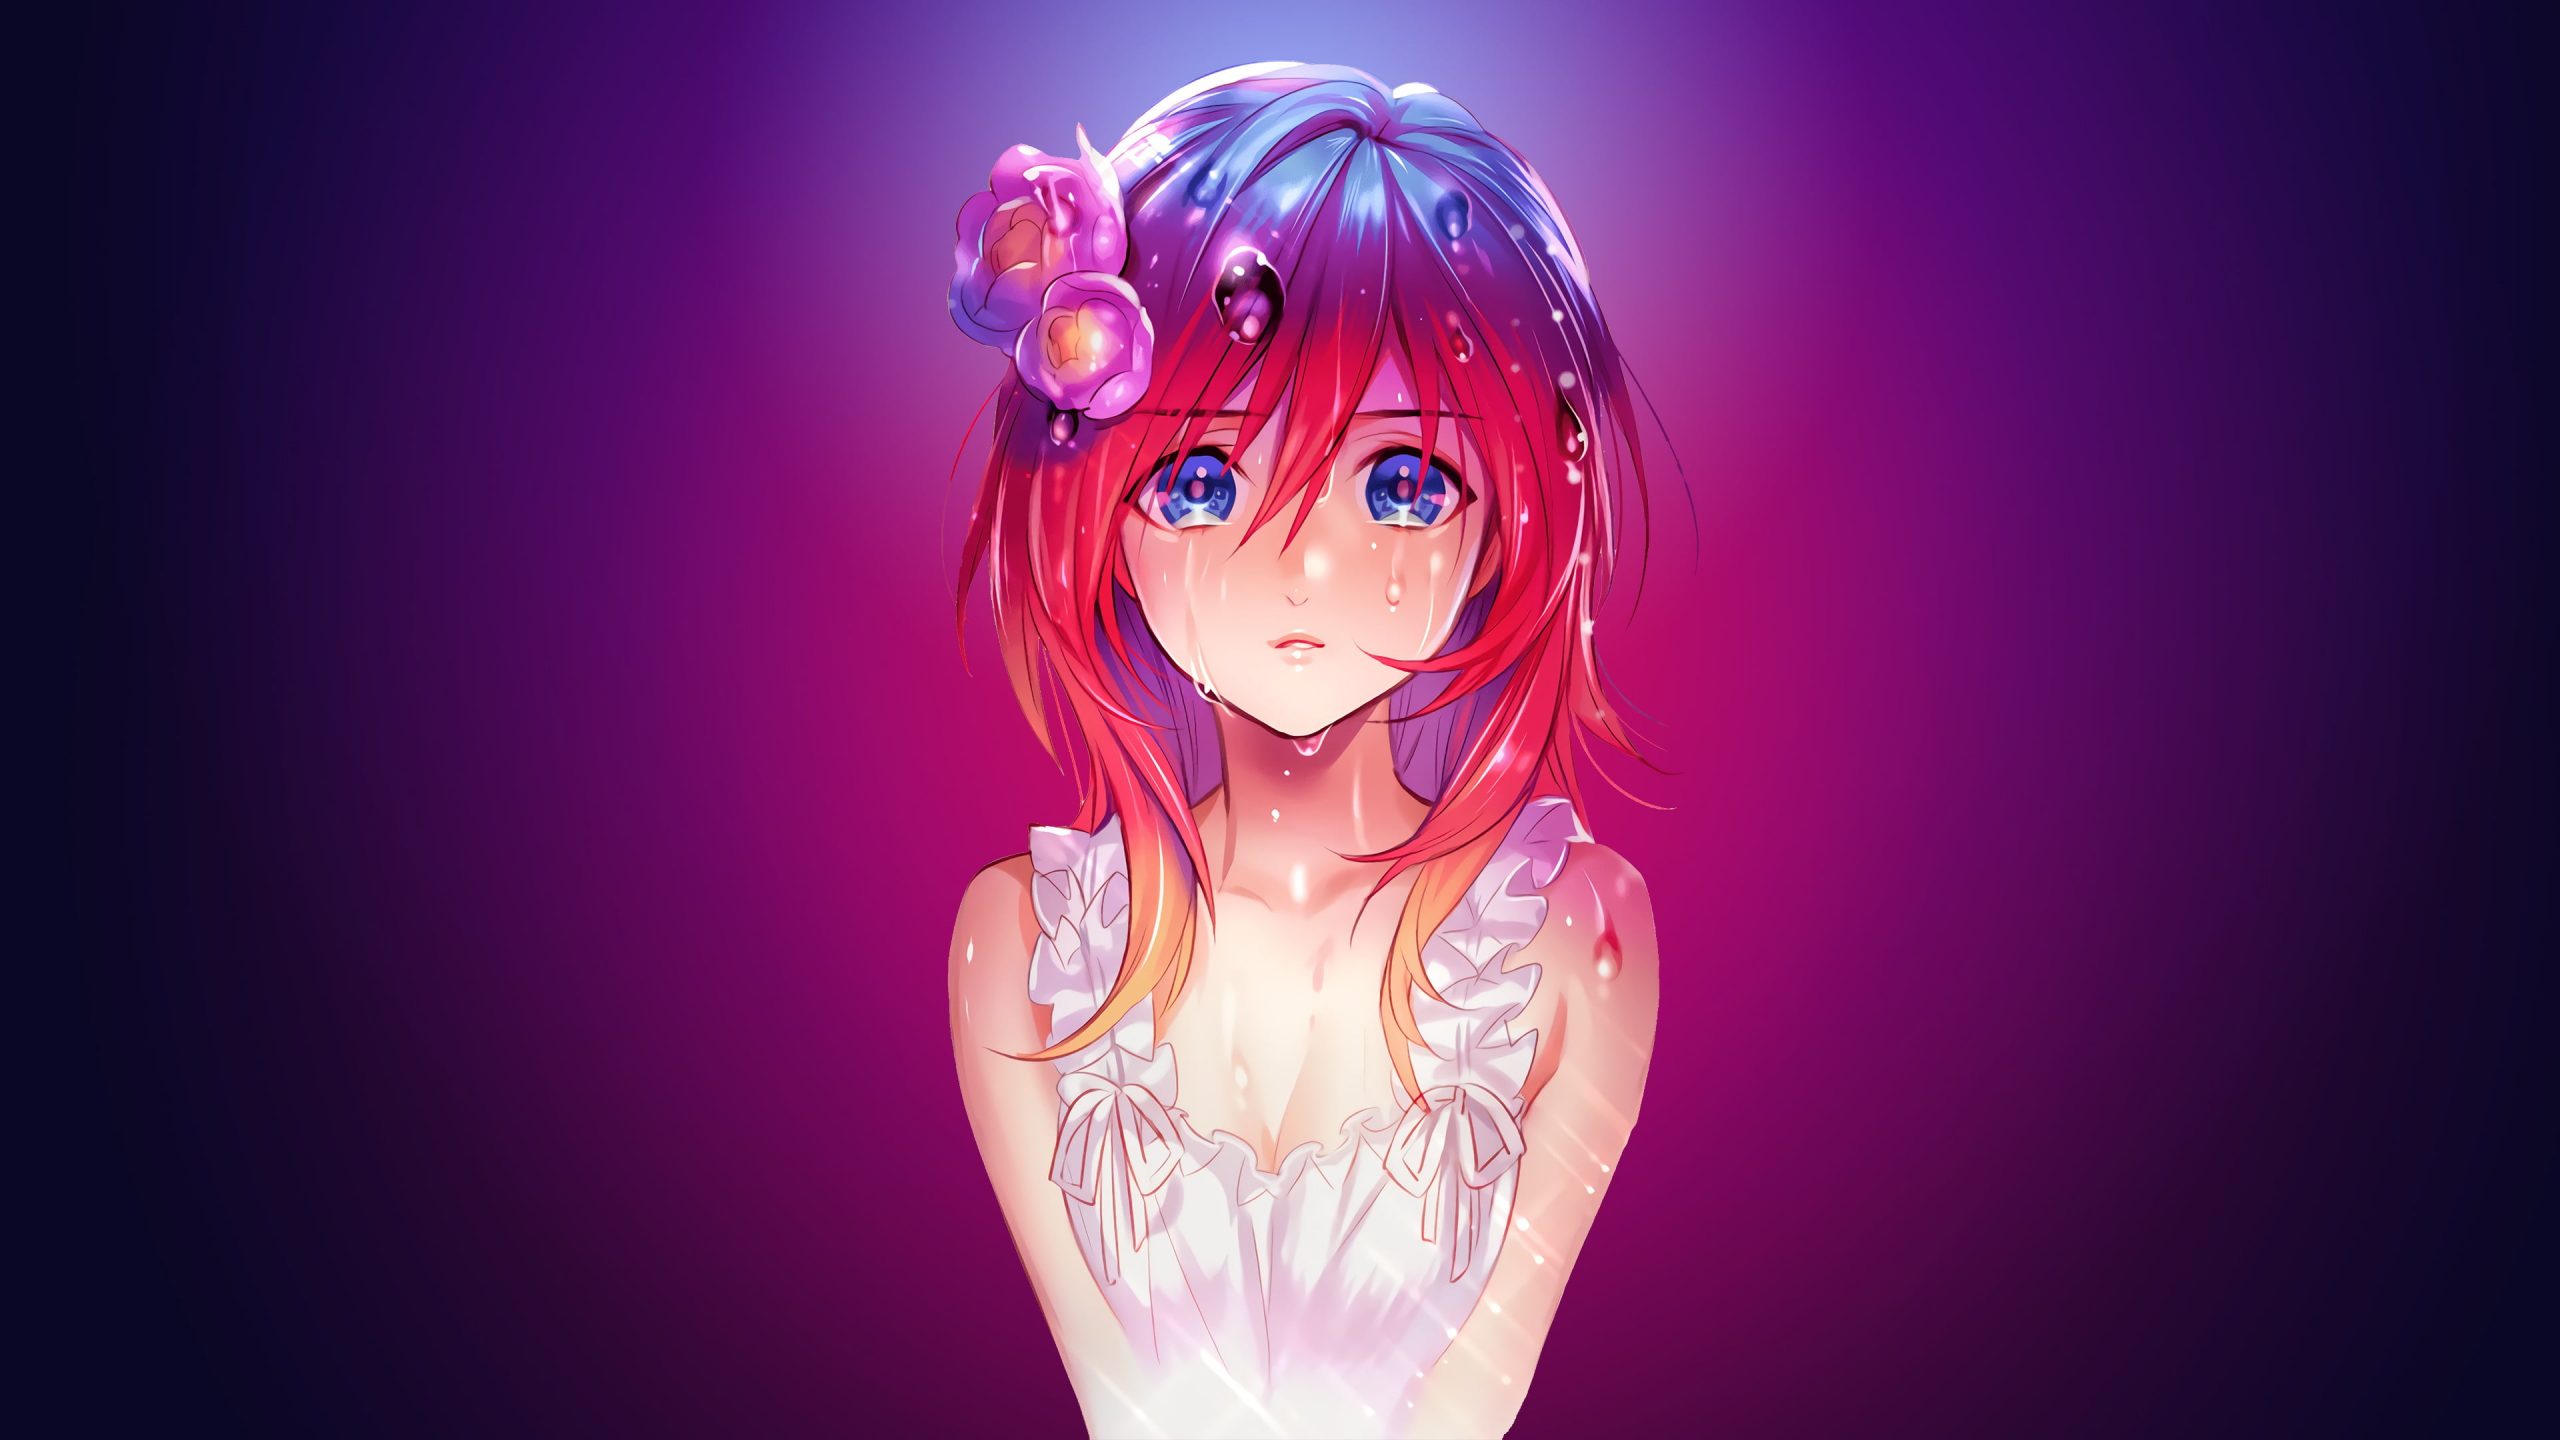 Red Haired Female Anime Character Digital Wallpaper, Anime Girls • Wallpaper For You HD Wallpaper For Desktop & Mobile